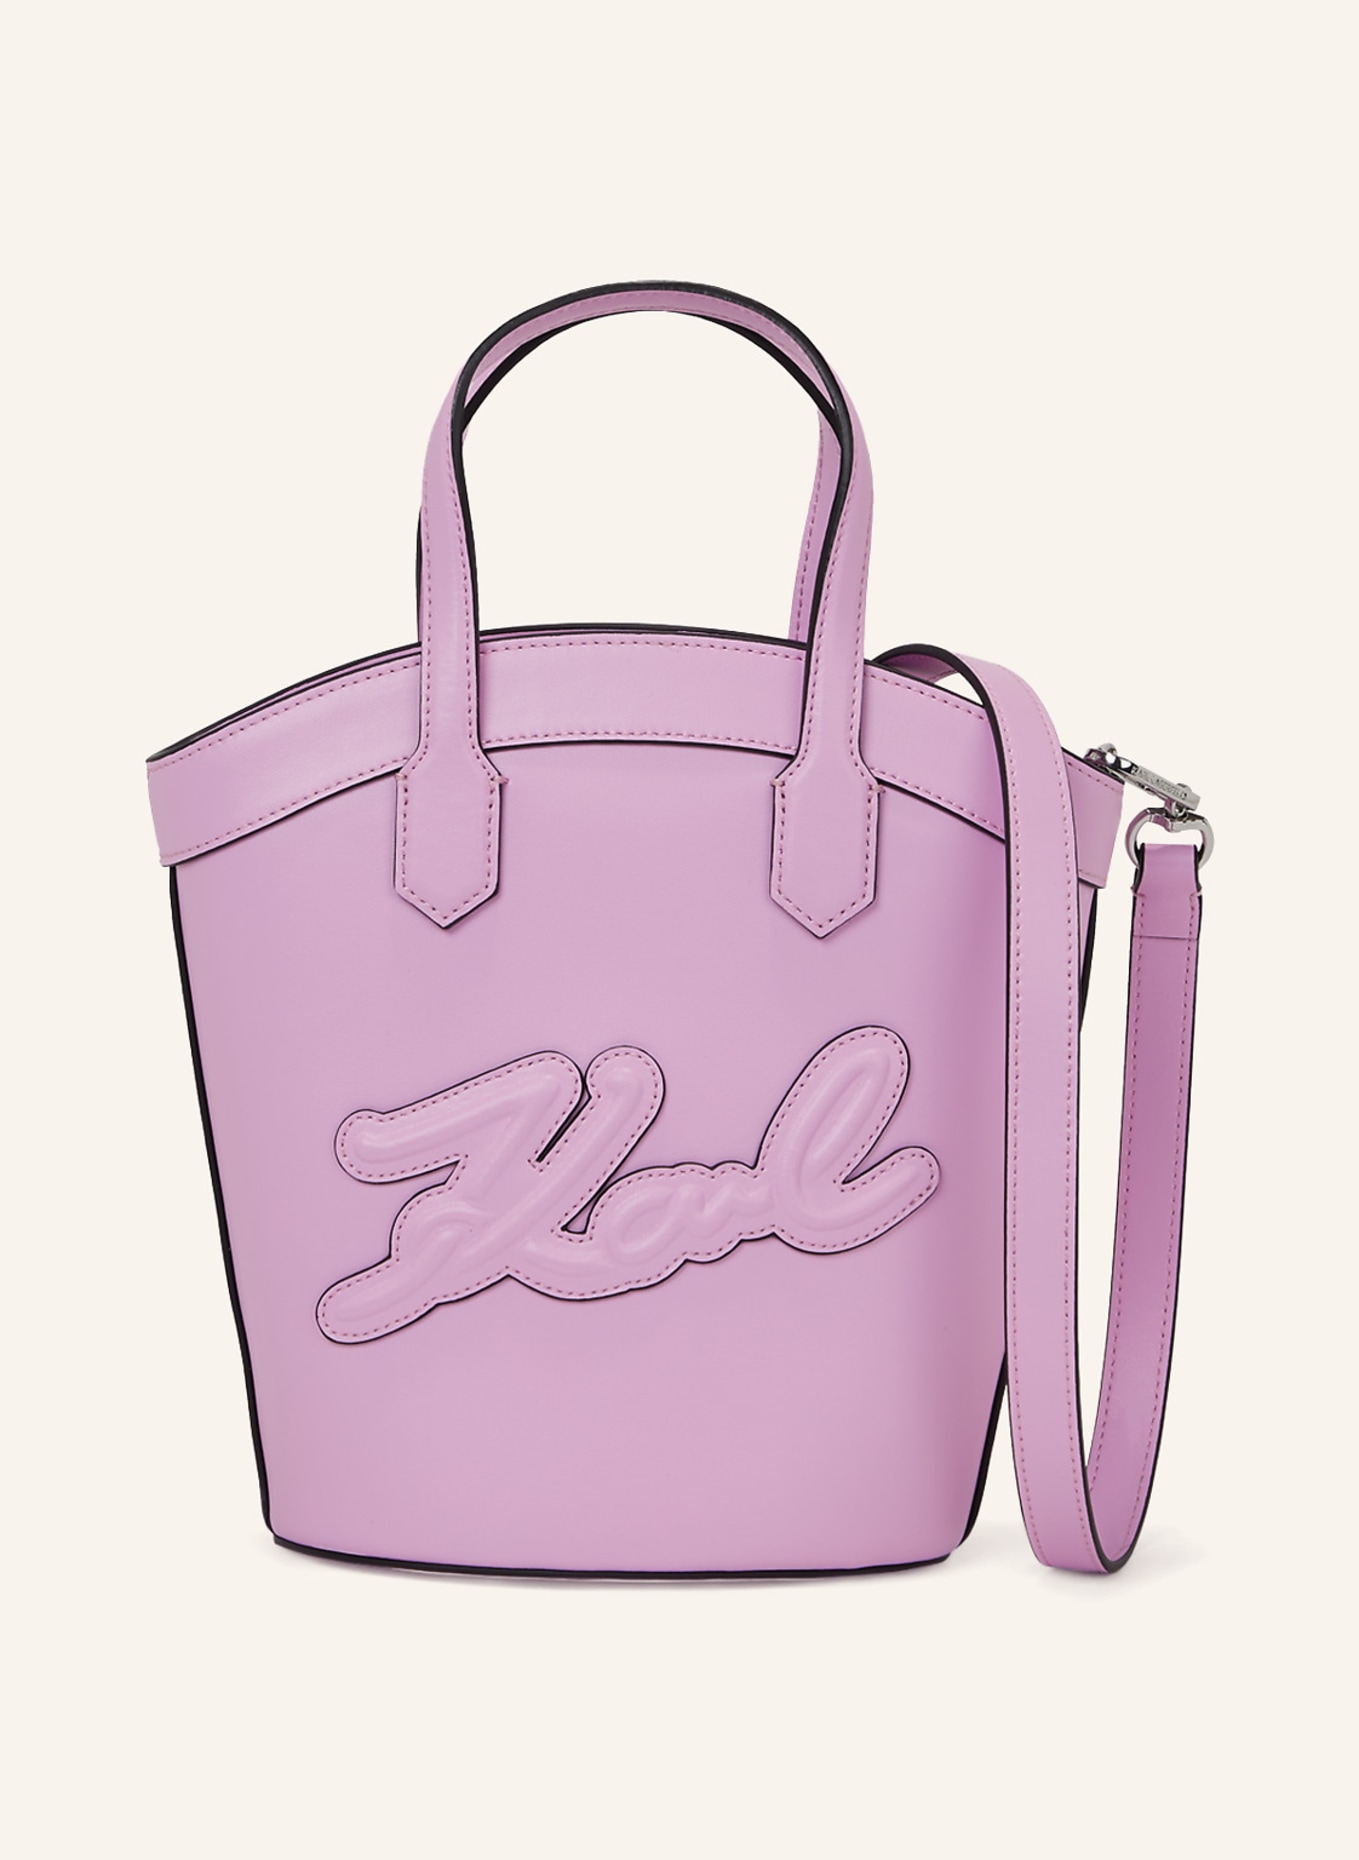 KARL LAGERFELD Handtasche, Farbe: LILA (Bild 1)